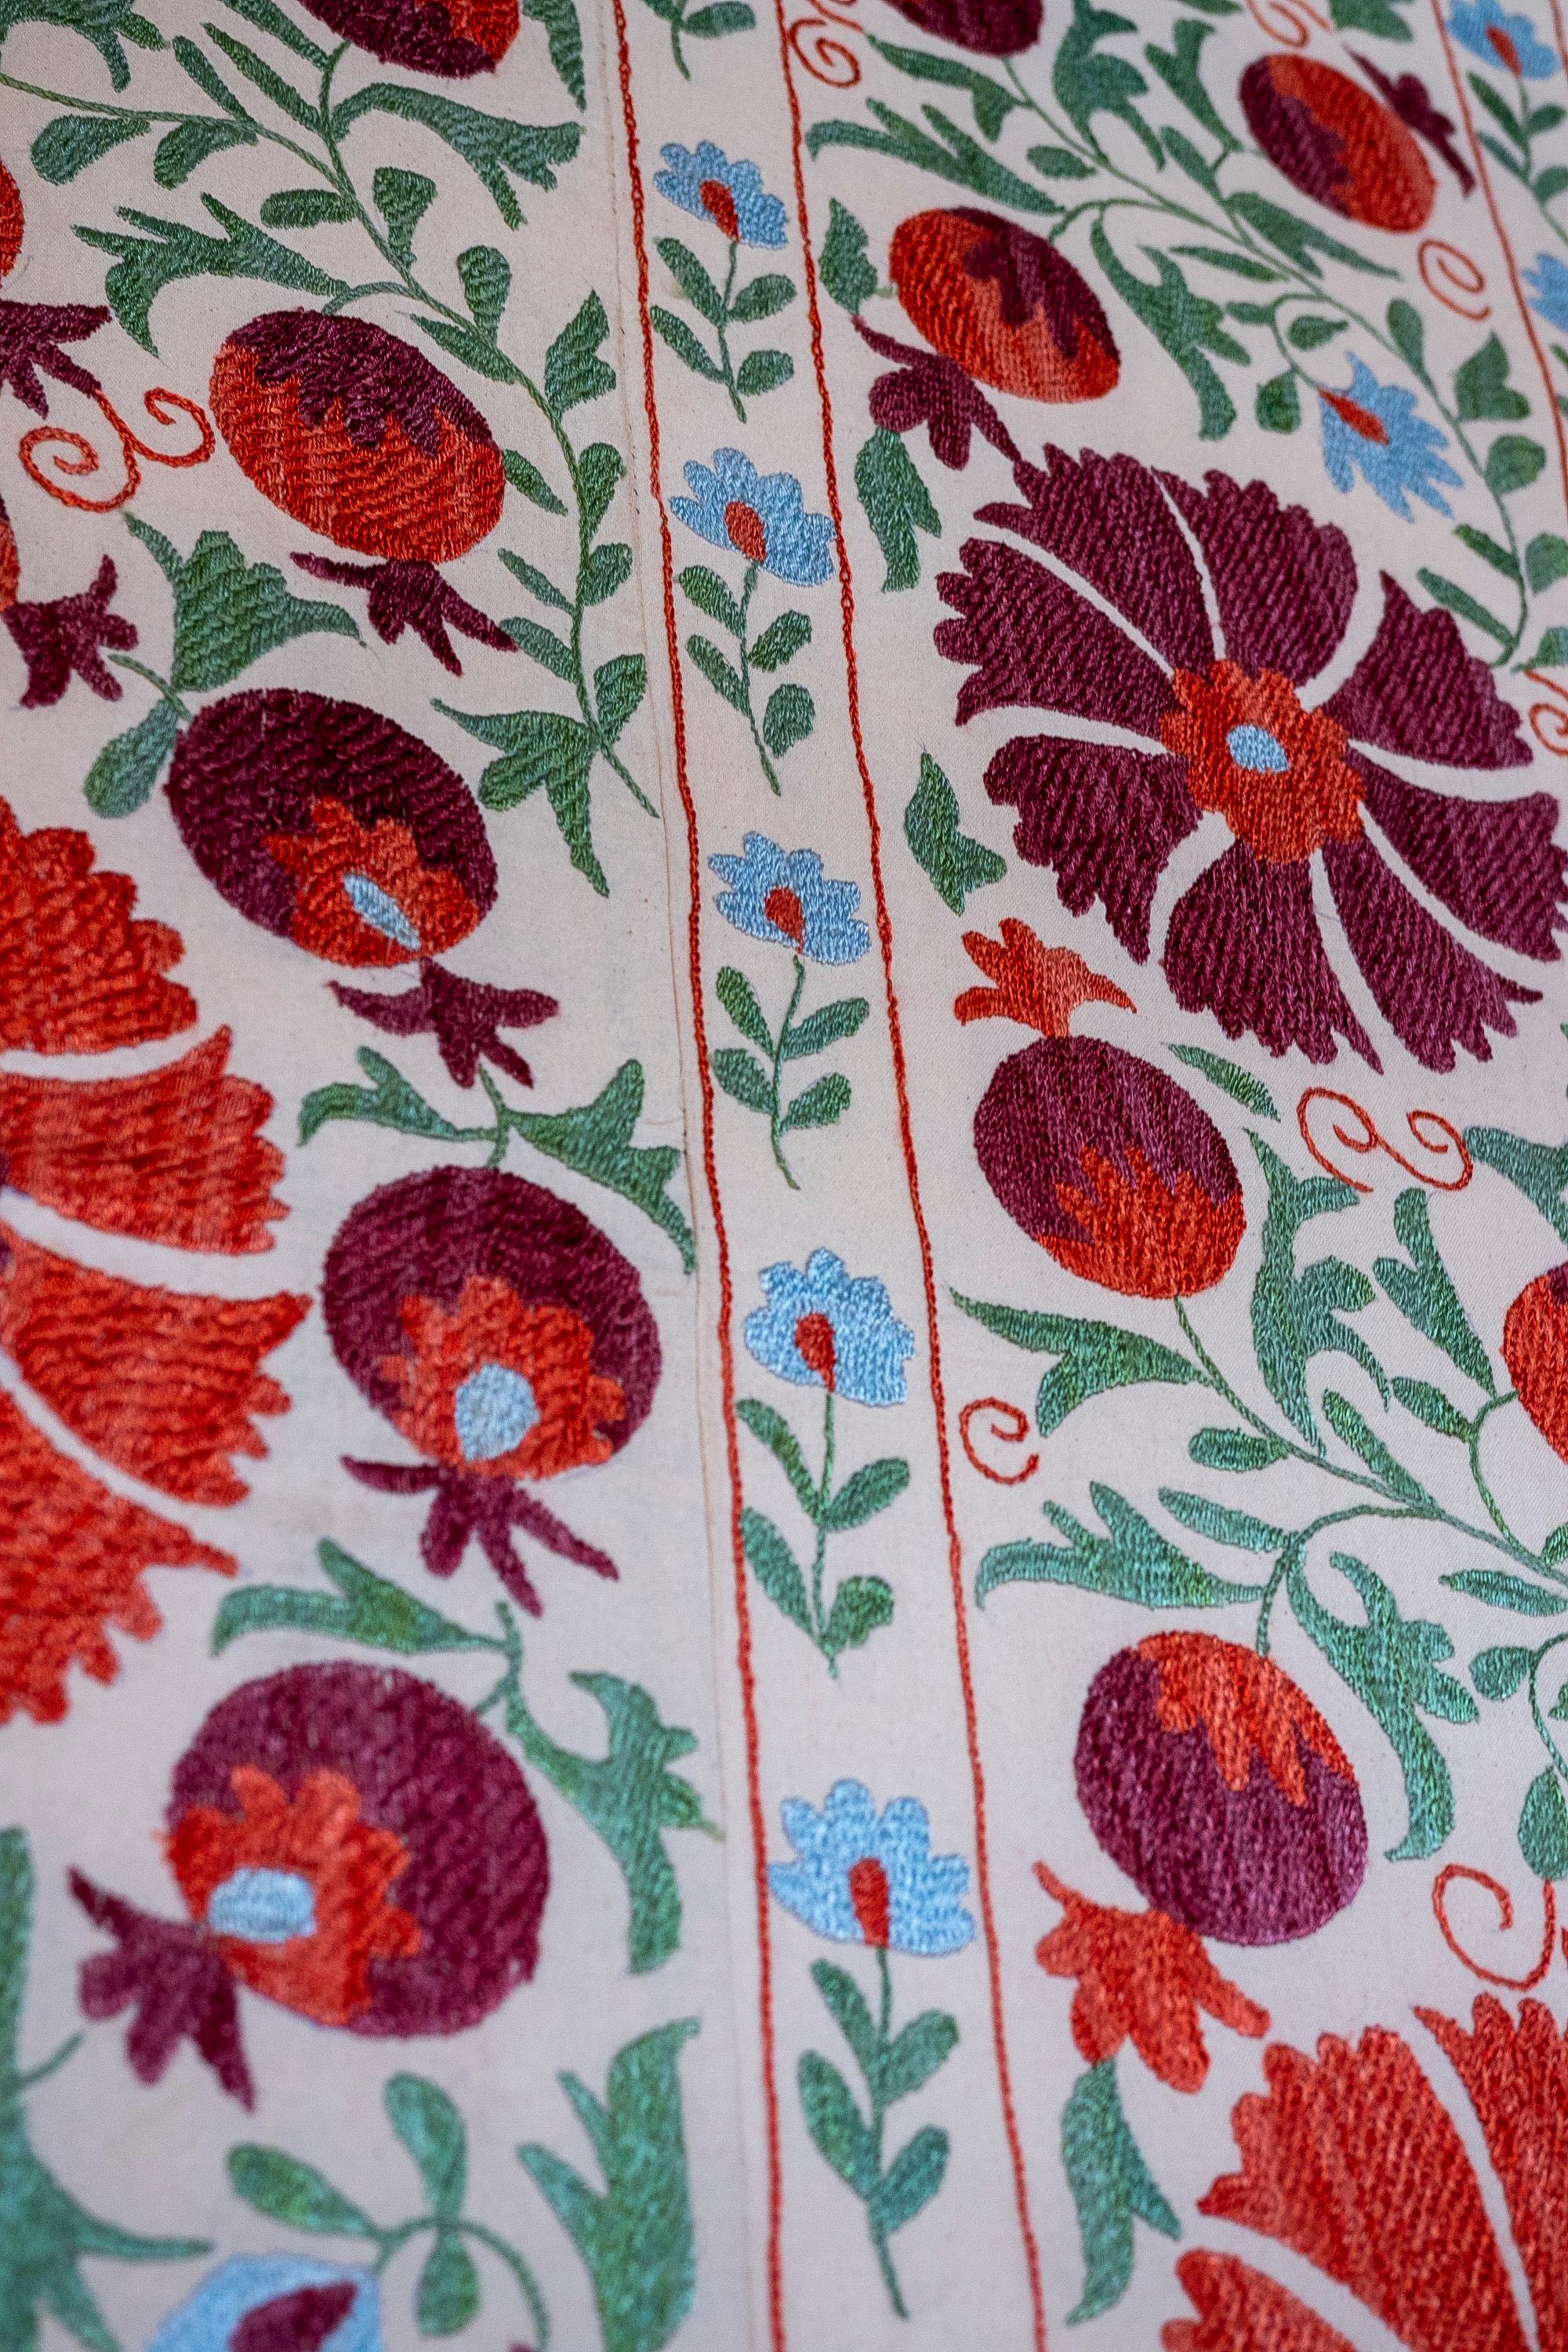 1970s Uzbekistan Hand Stitched Fabric Known as Suzani  9